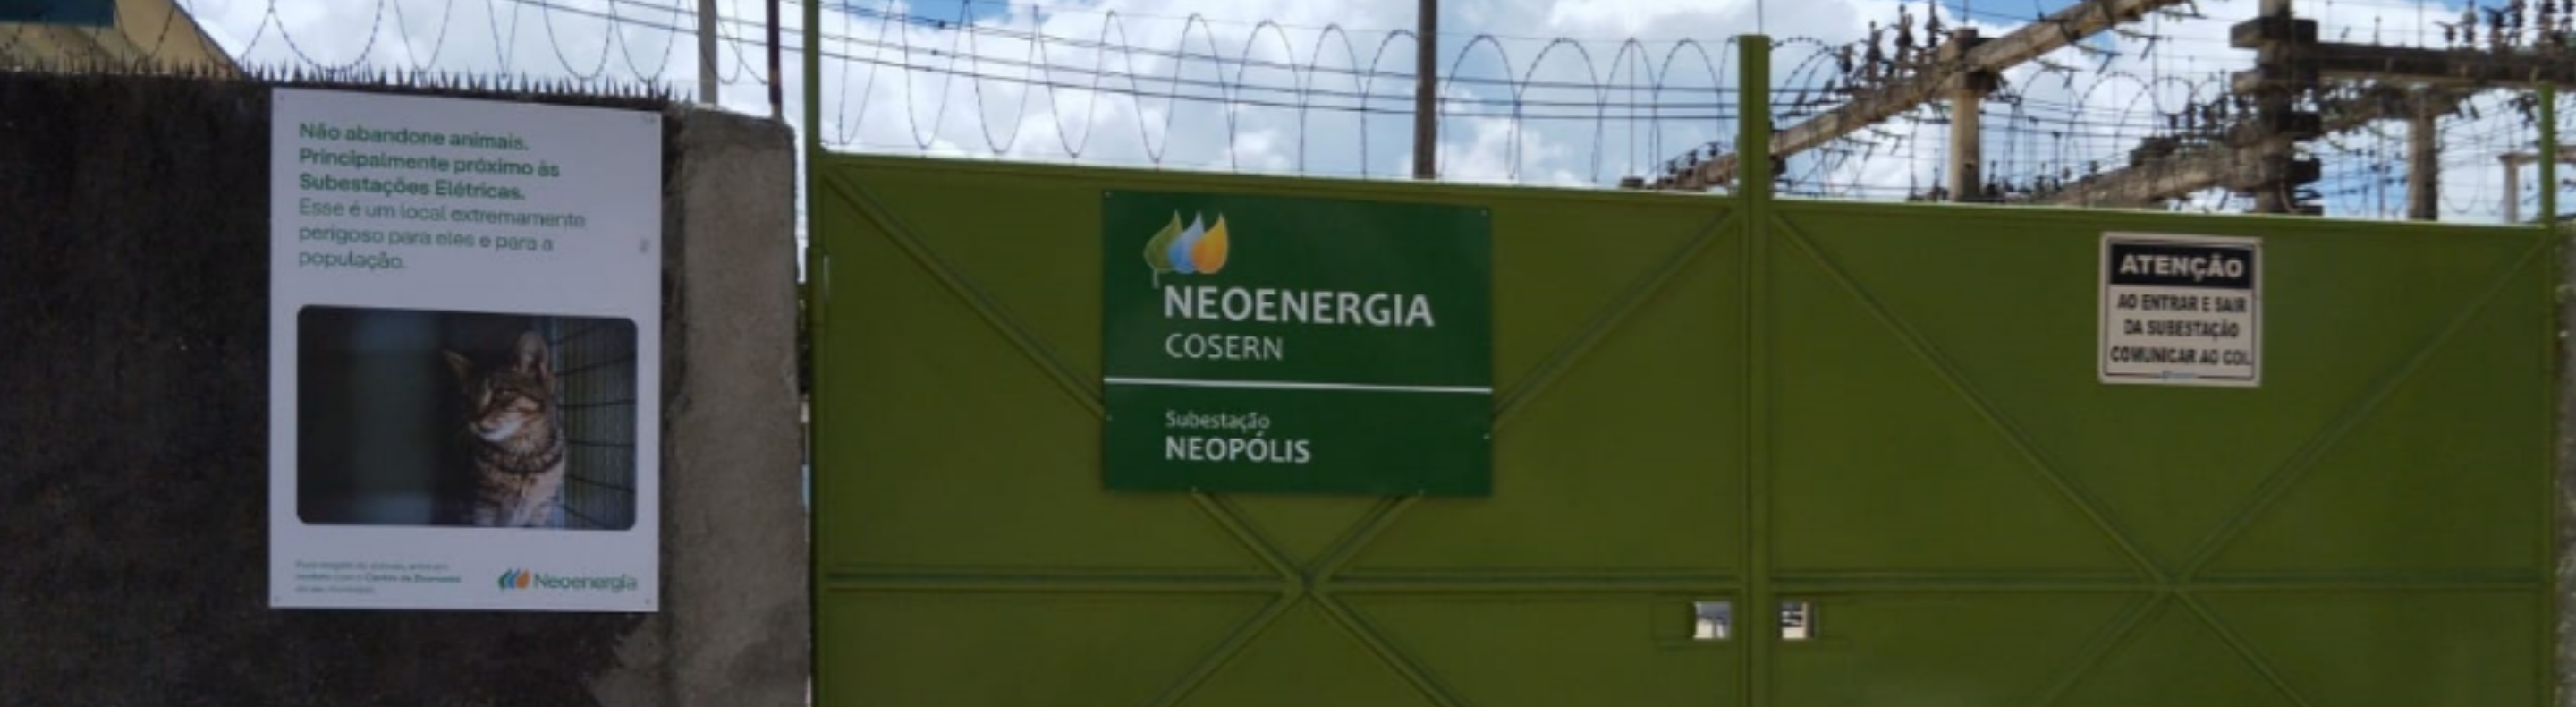 Imagem mostra placa fixada em muro de Subestação Elétrica da Neoenergia Cosern alertando para não abandono de animais